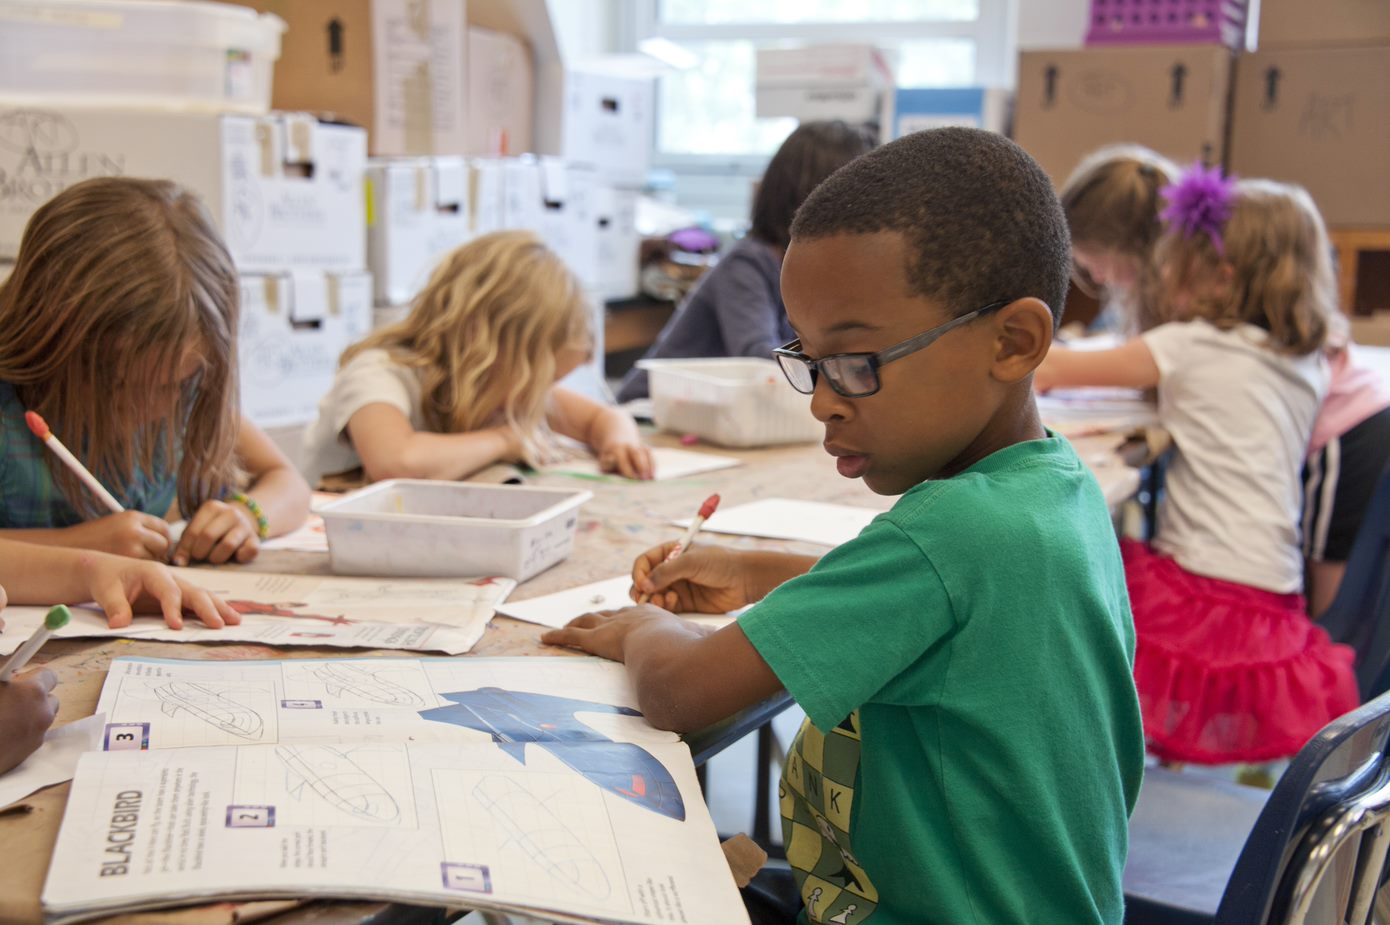 Children in a Classroom doing homework